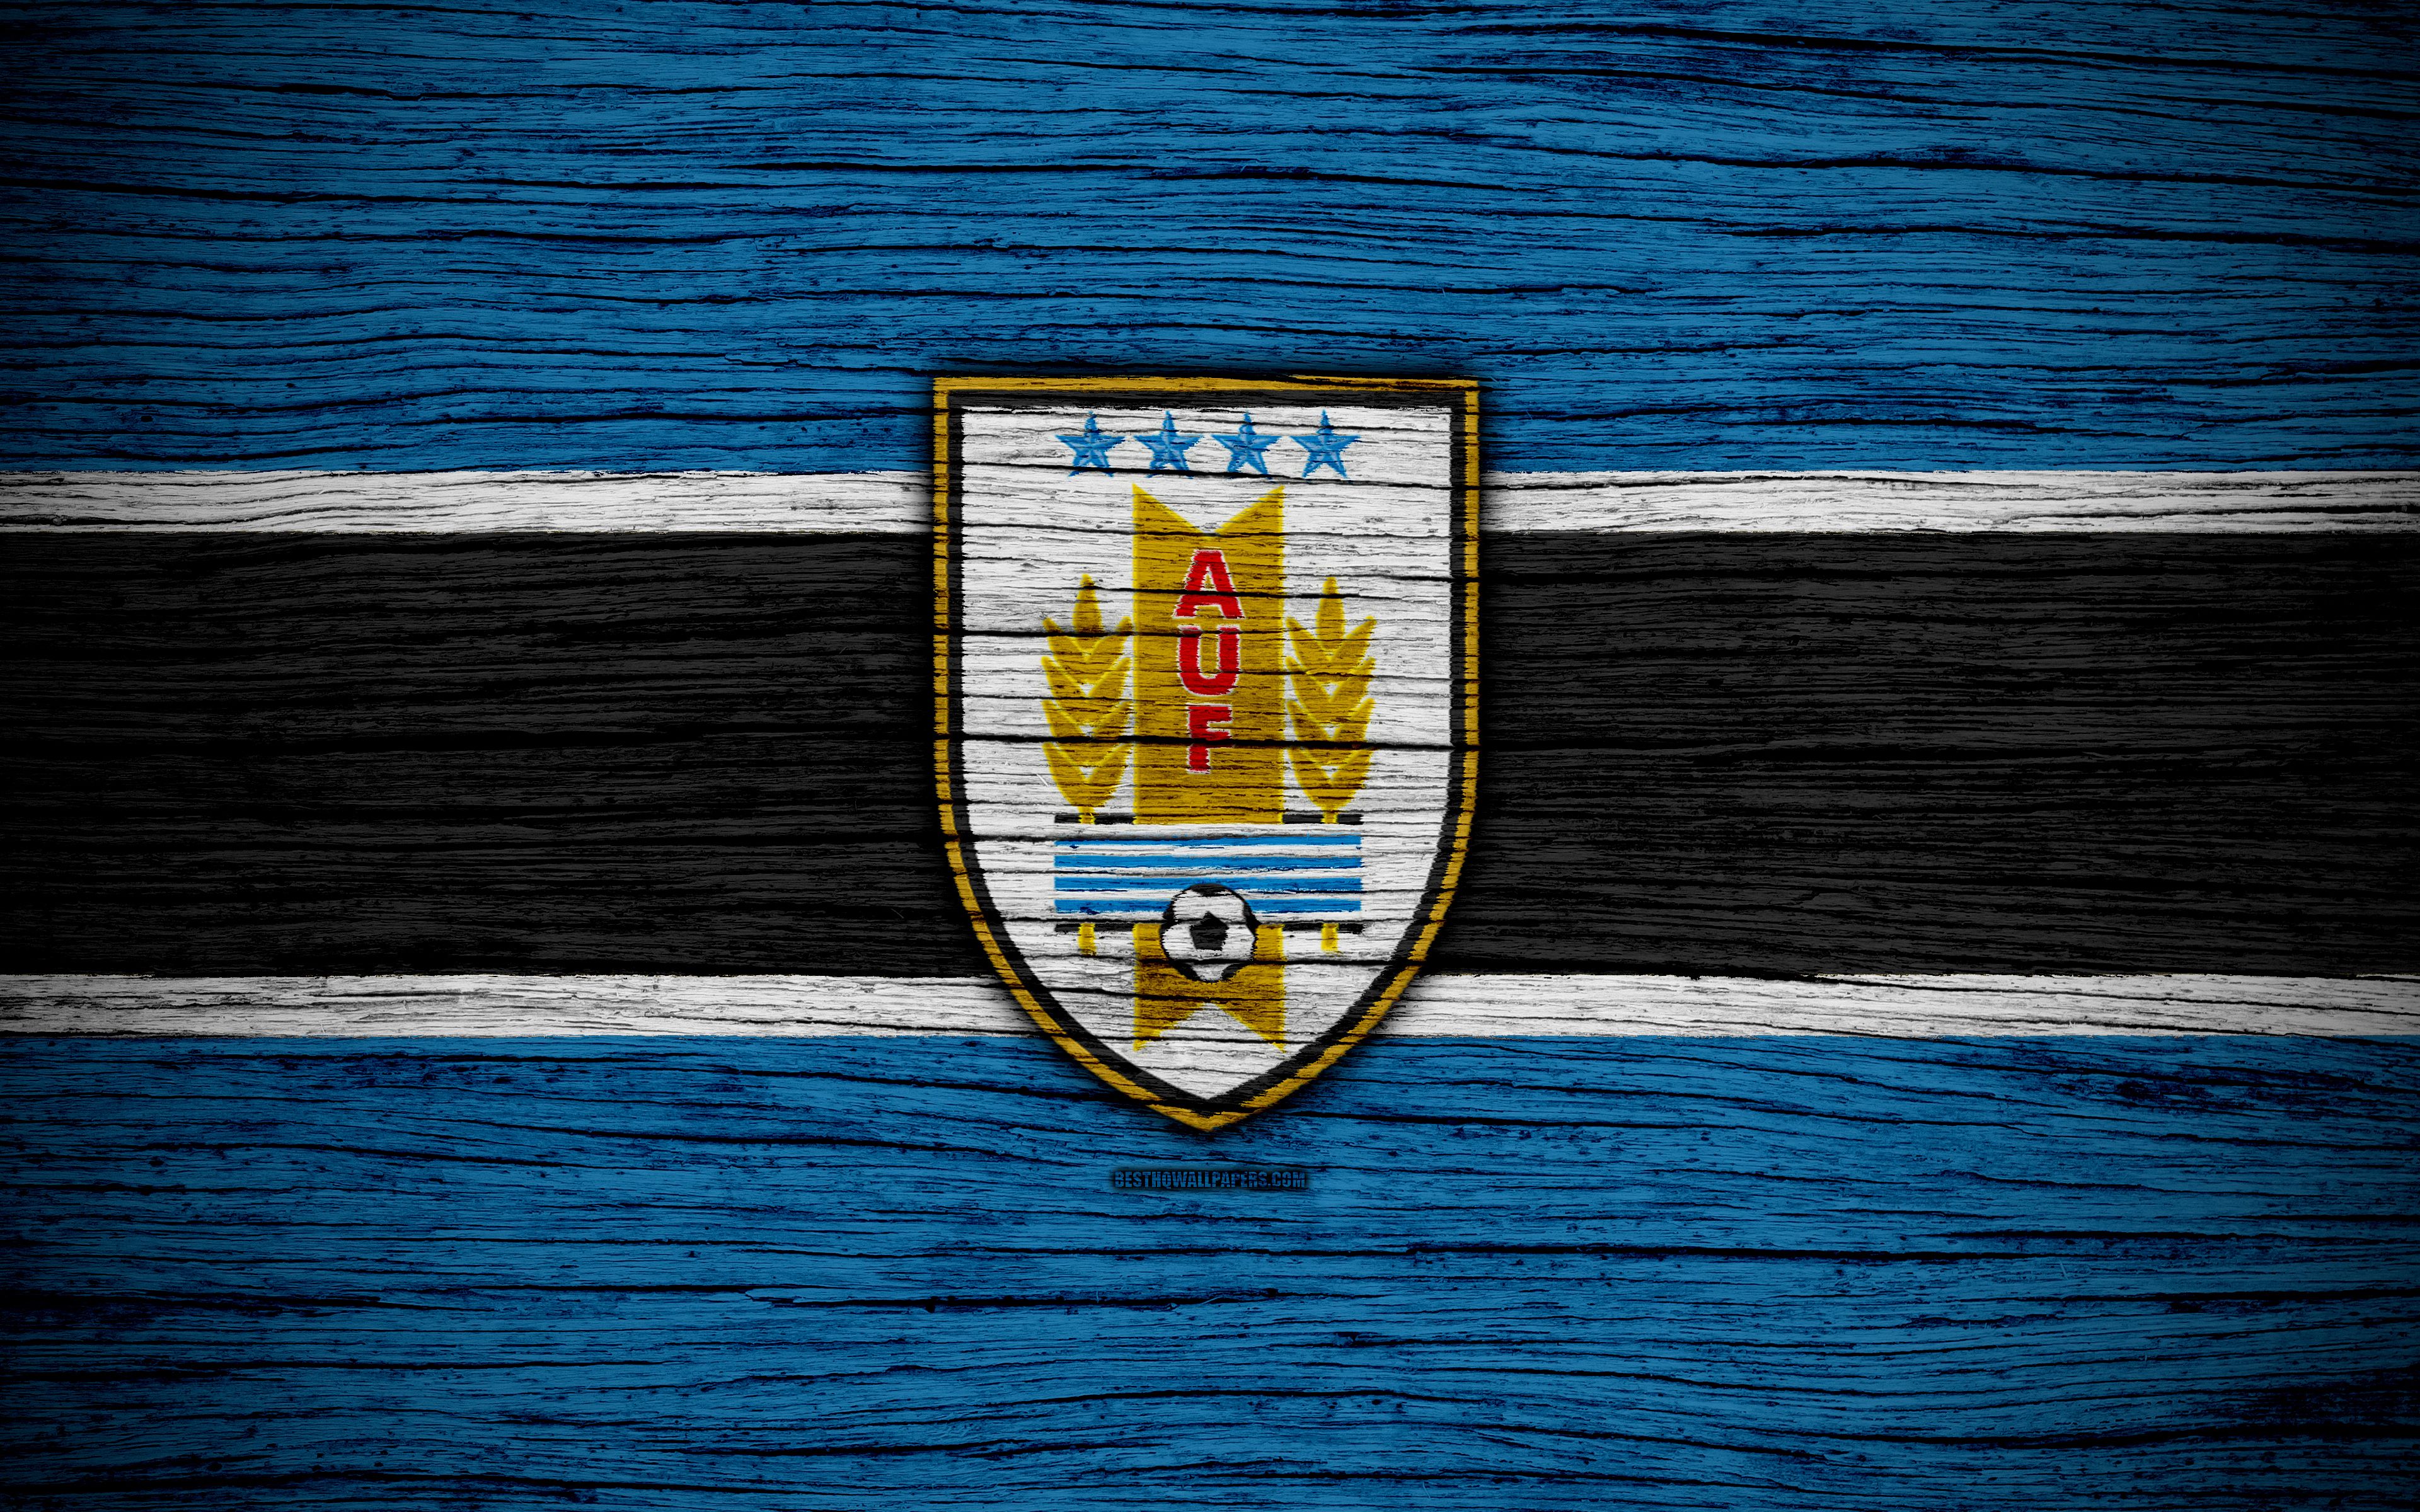 Uruguay  Football logo, Uruguay, Futbol